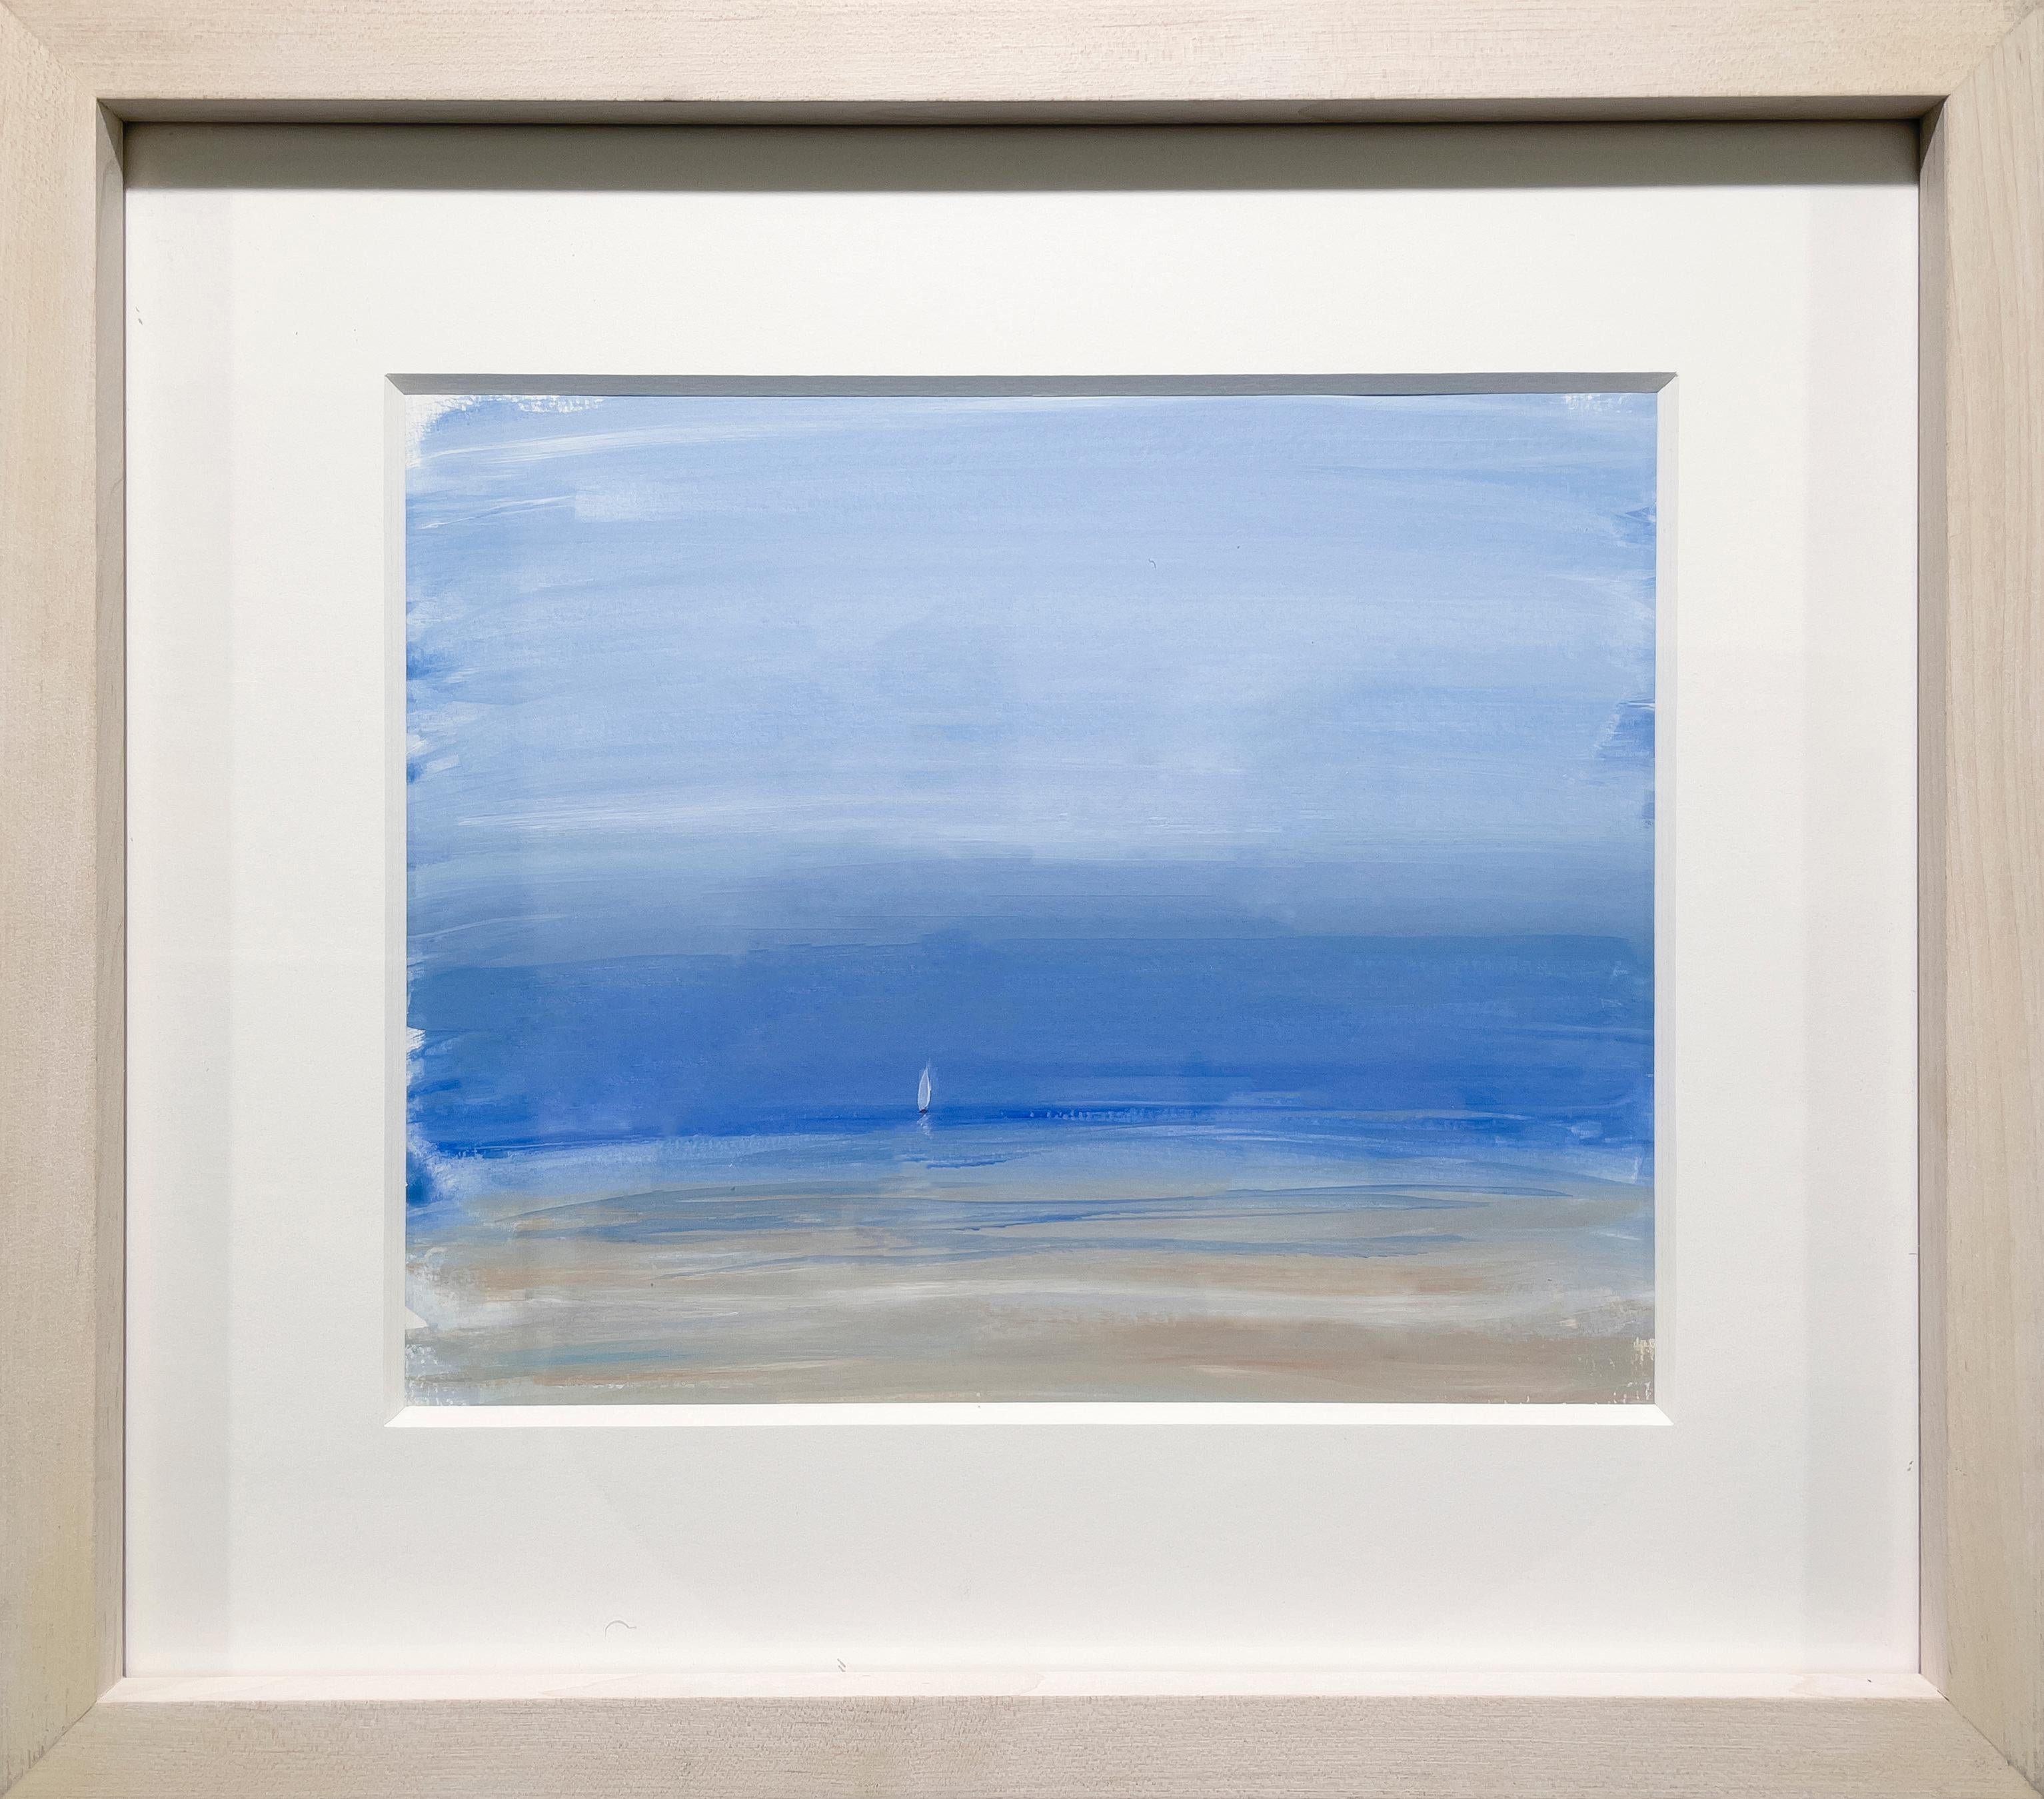 S. Cora Aldo Landscape Painting – "Ein Segel", zeitgenössisches Gemälde einer Meereslandschaft